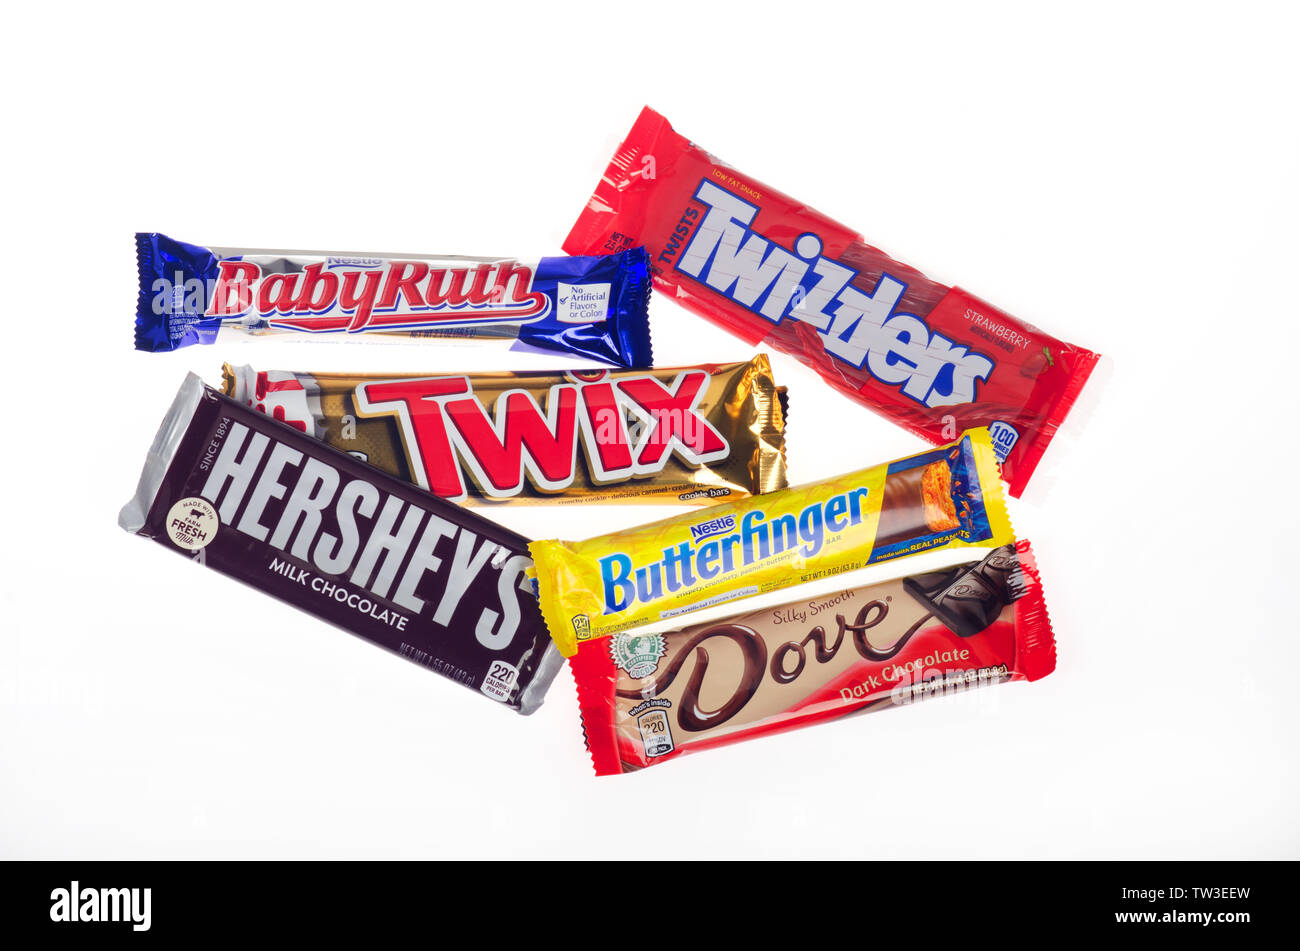 Surtido de barras de caramelo y regaliz de Nestlé, Hersheys, Paloma y Marte Foto de stock